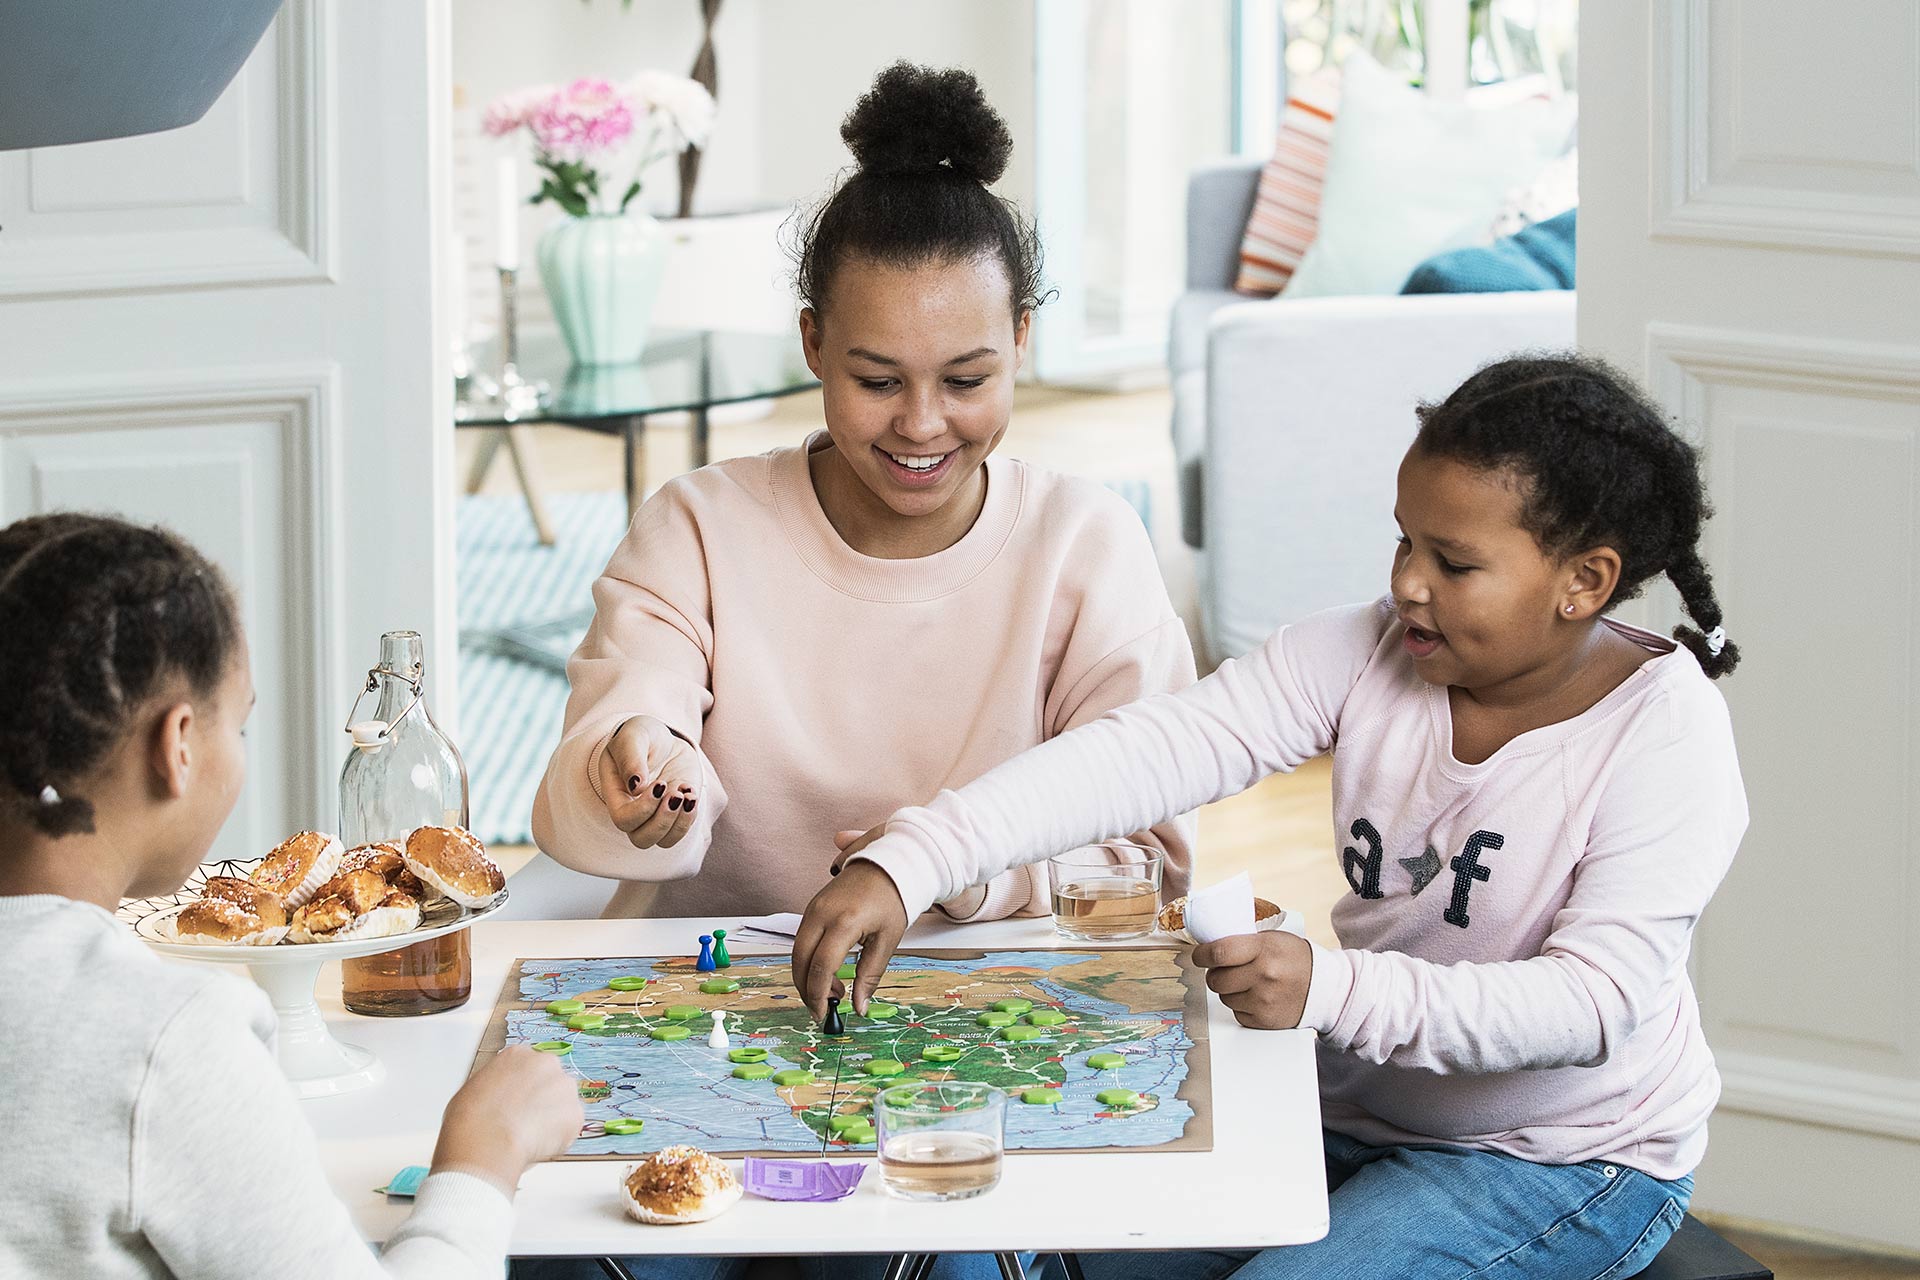 En kvinna i rosa tröja och två barn sitter vid ett bord i hemmet och spelar spel. På bordet står det ett fat med kanelbullar.